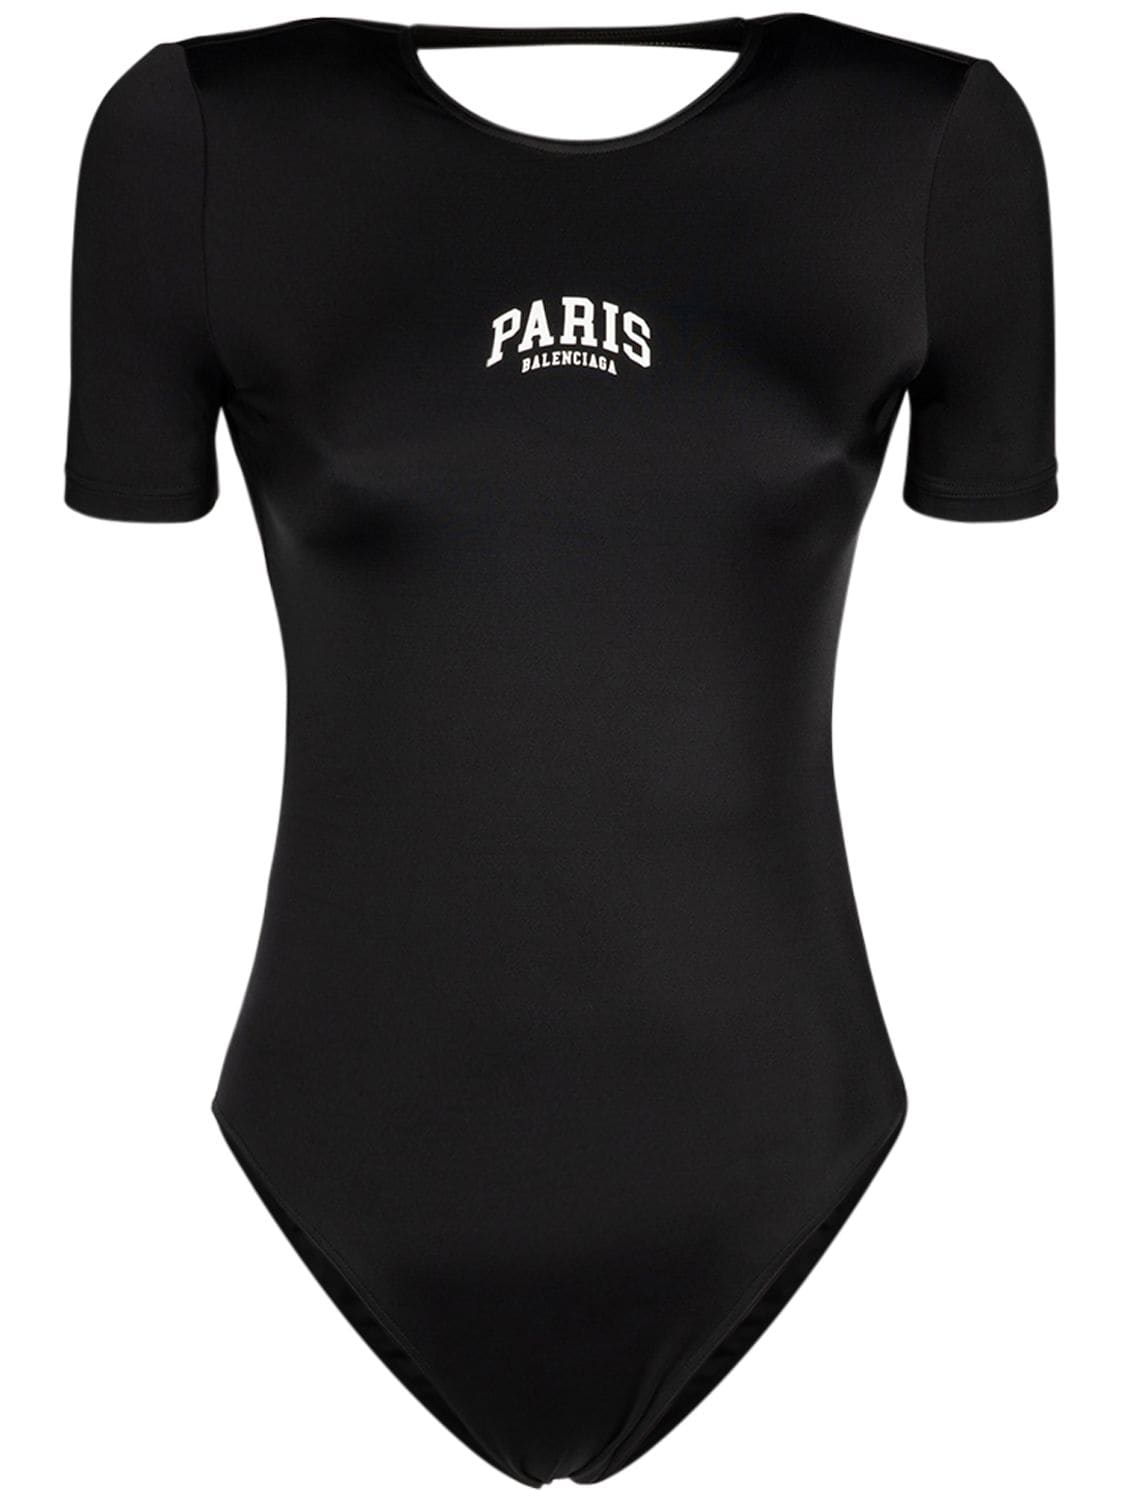 Paris Short Sleeve One-piece Swimsuit